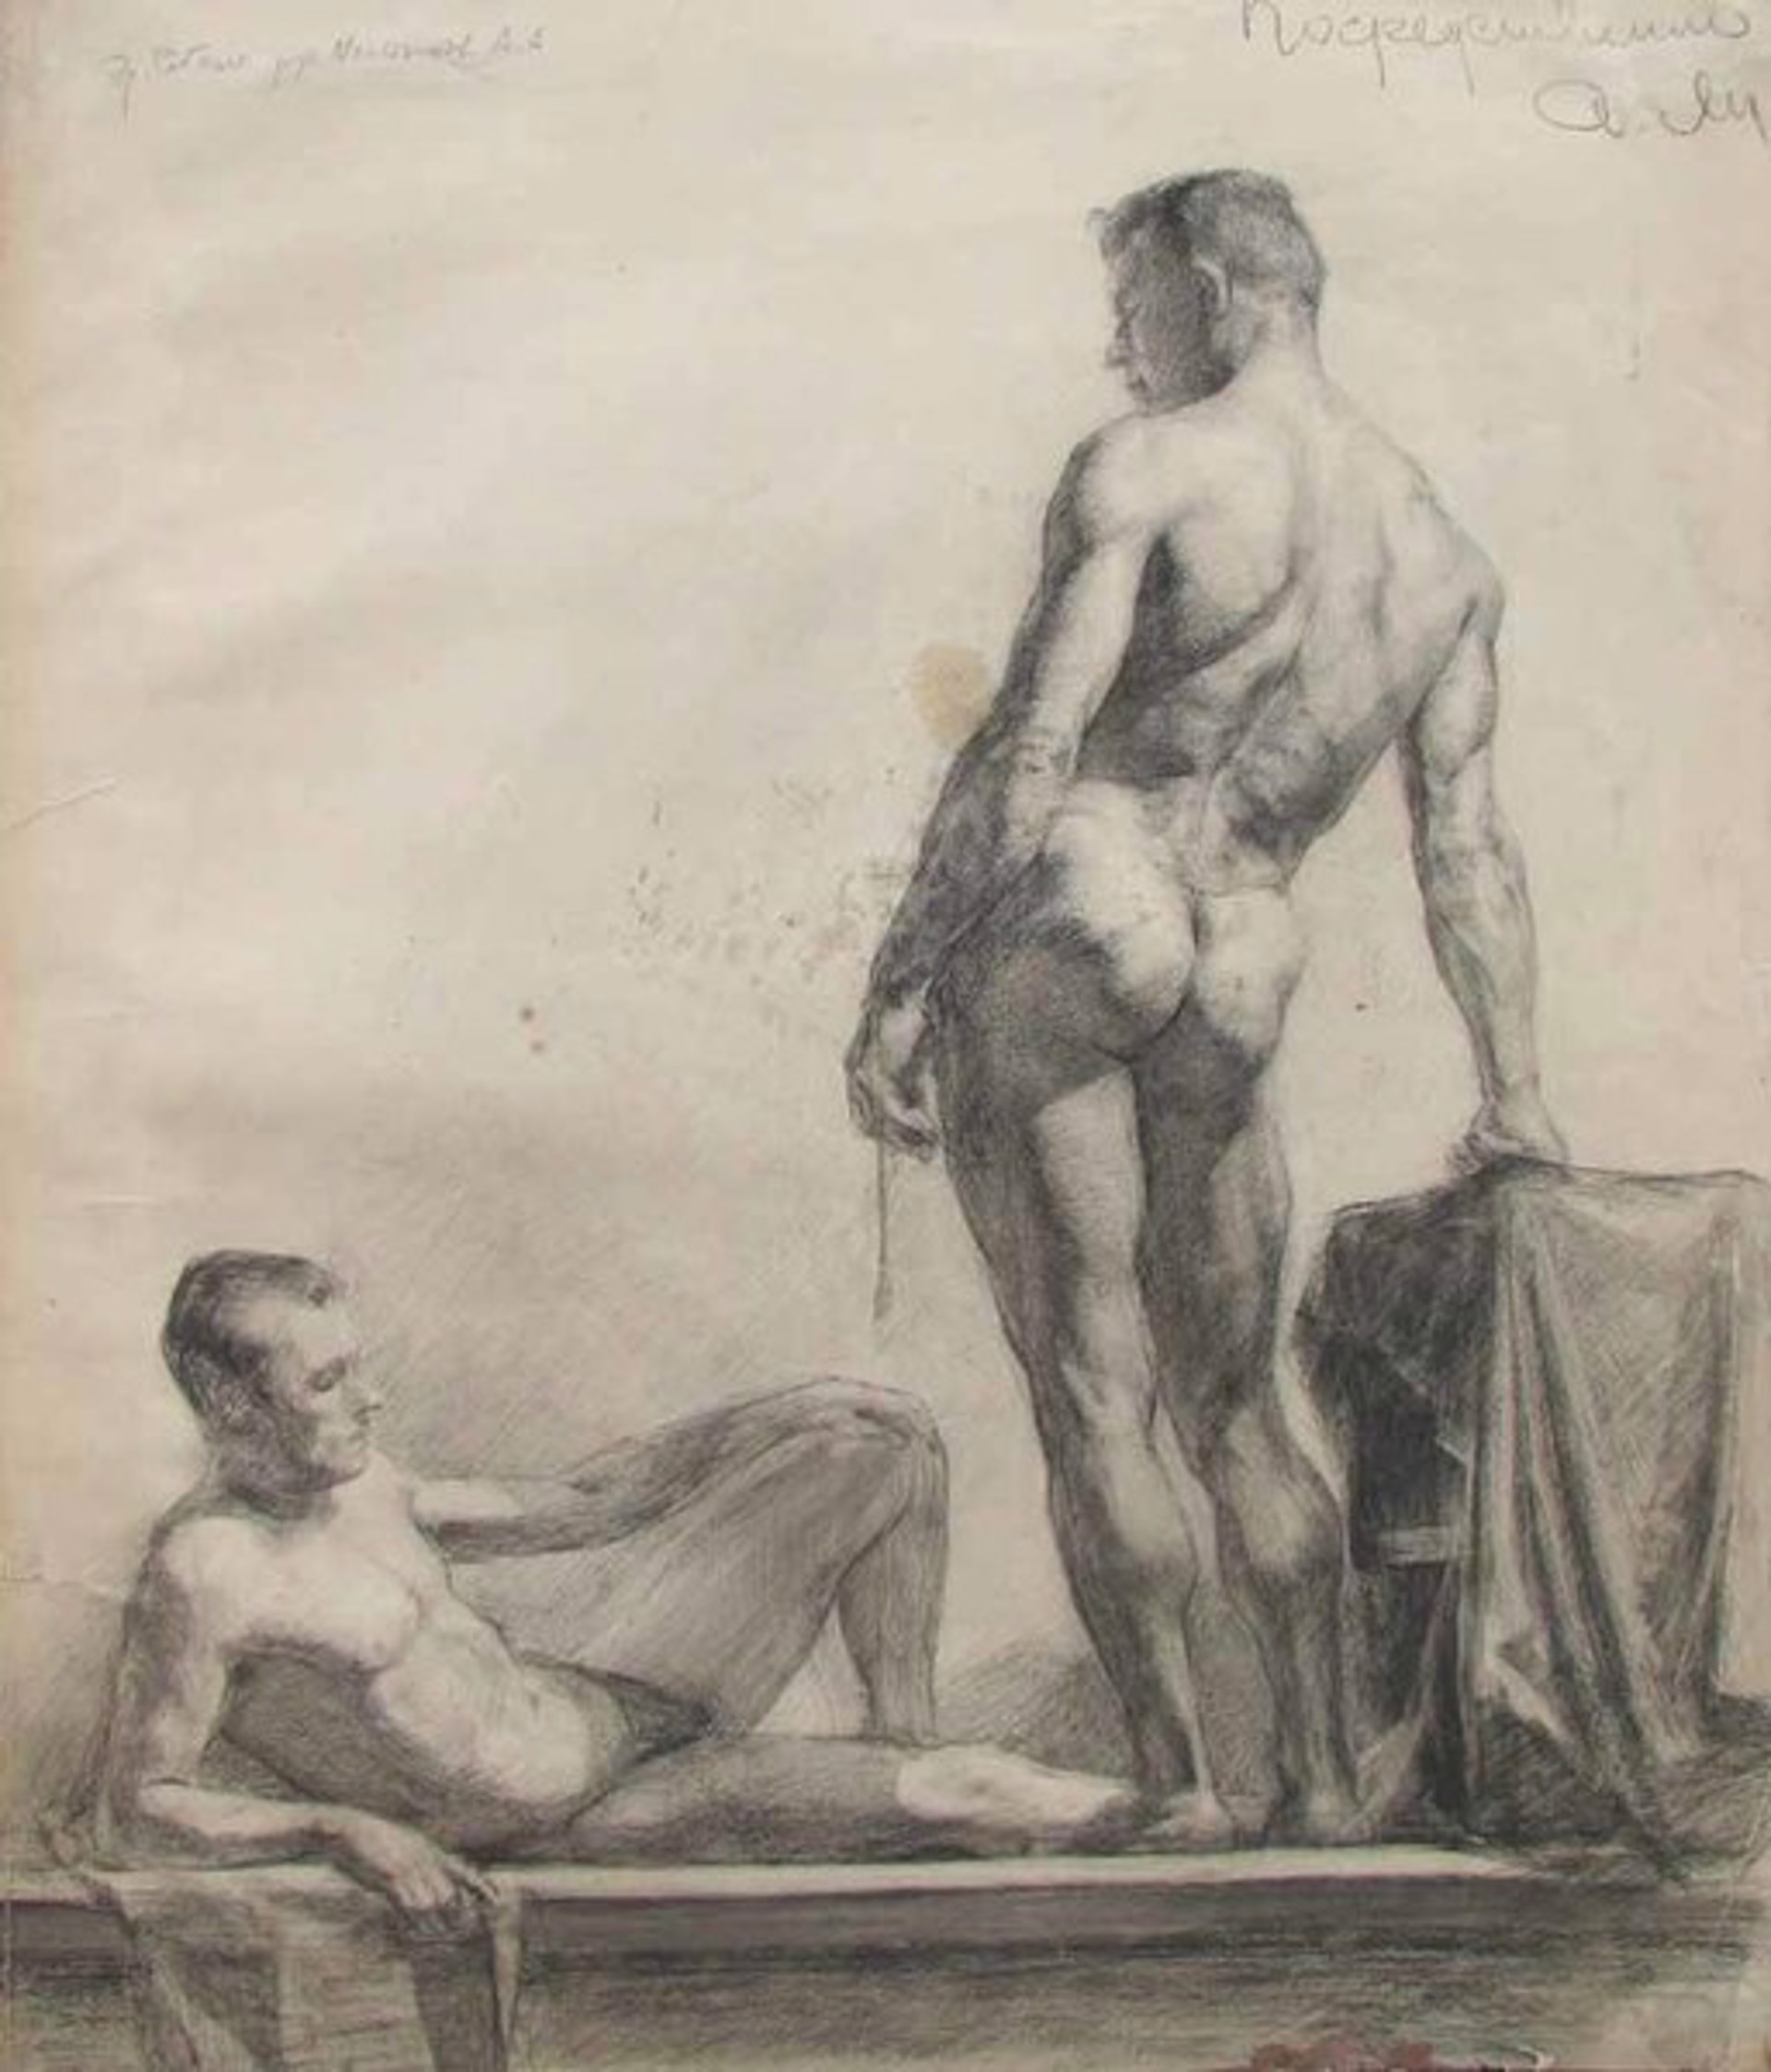 Study of Two Men by Erikh Rebane